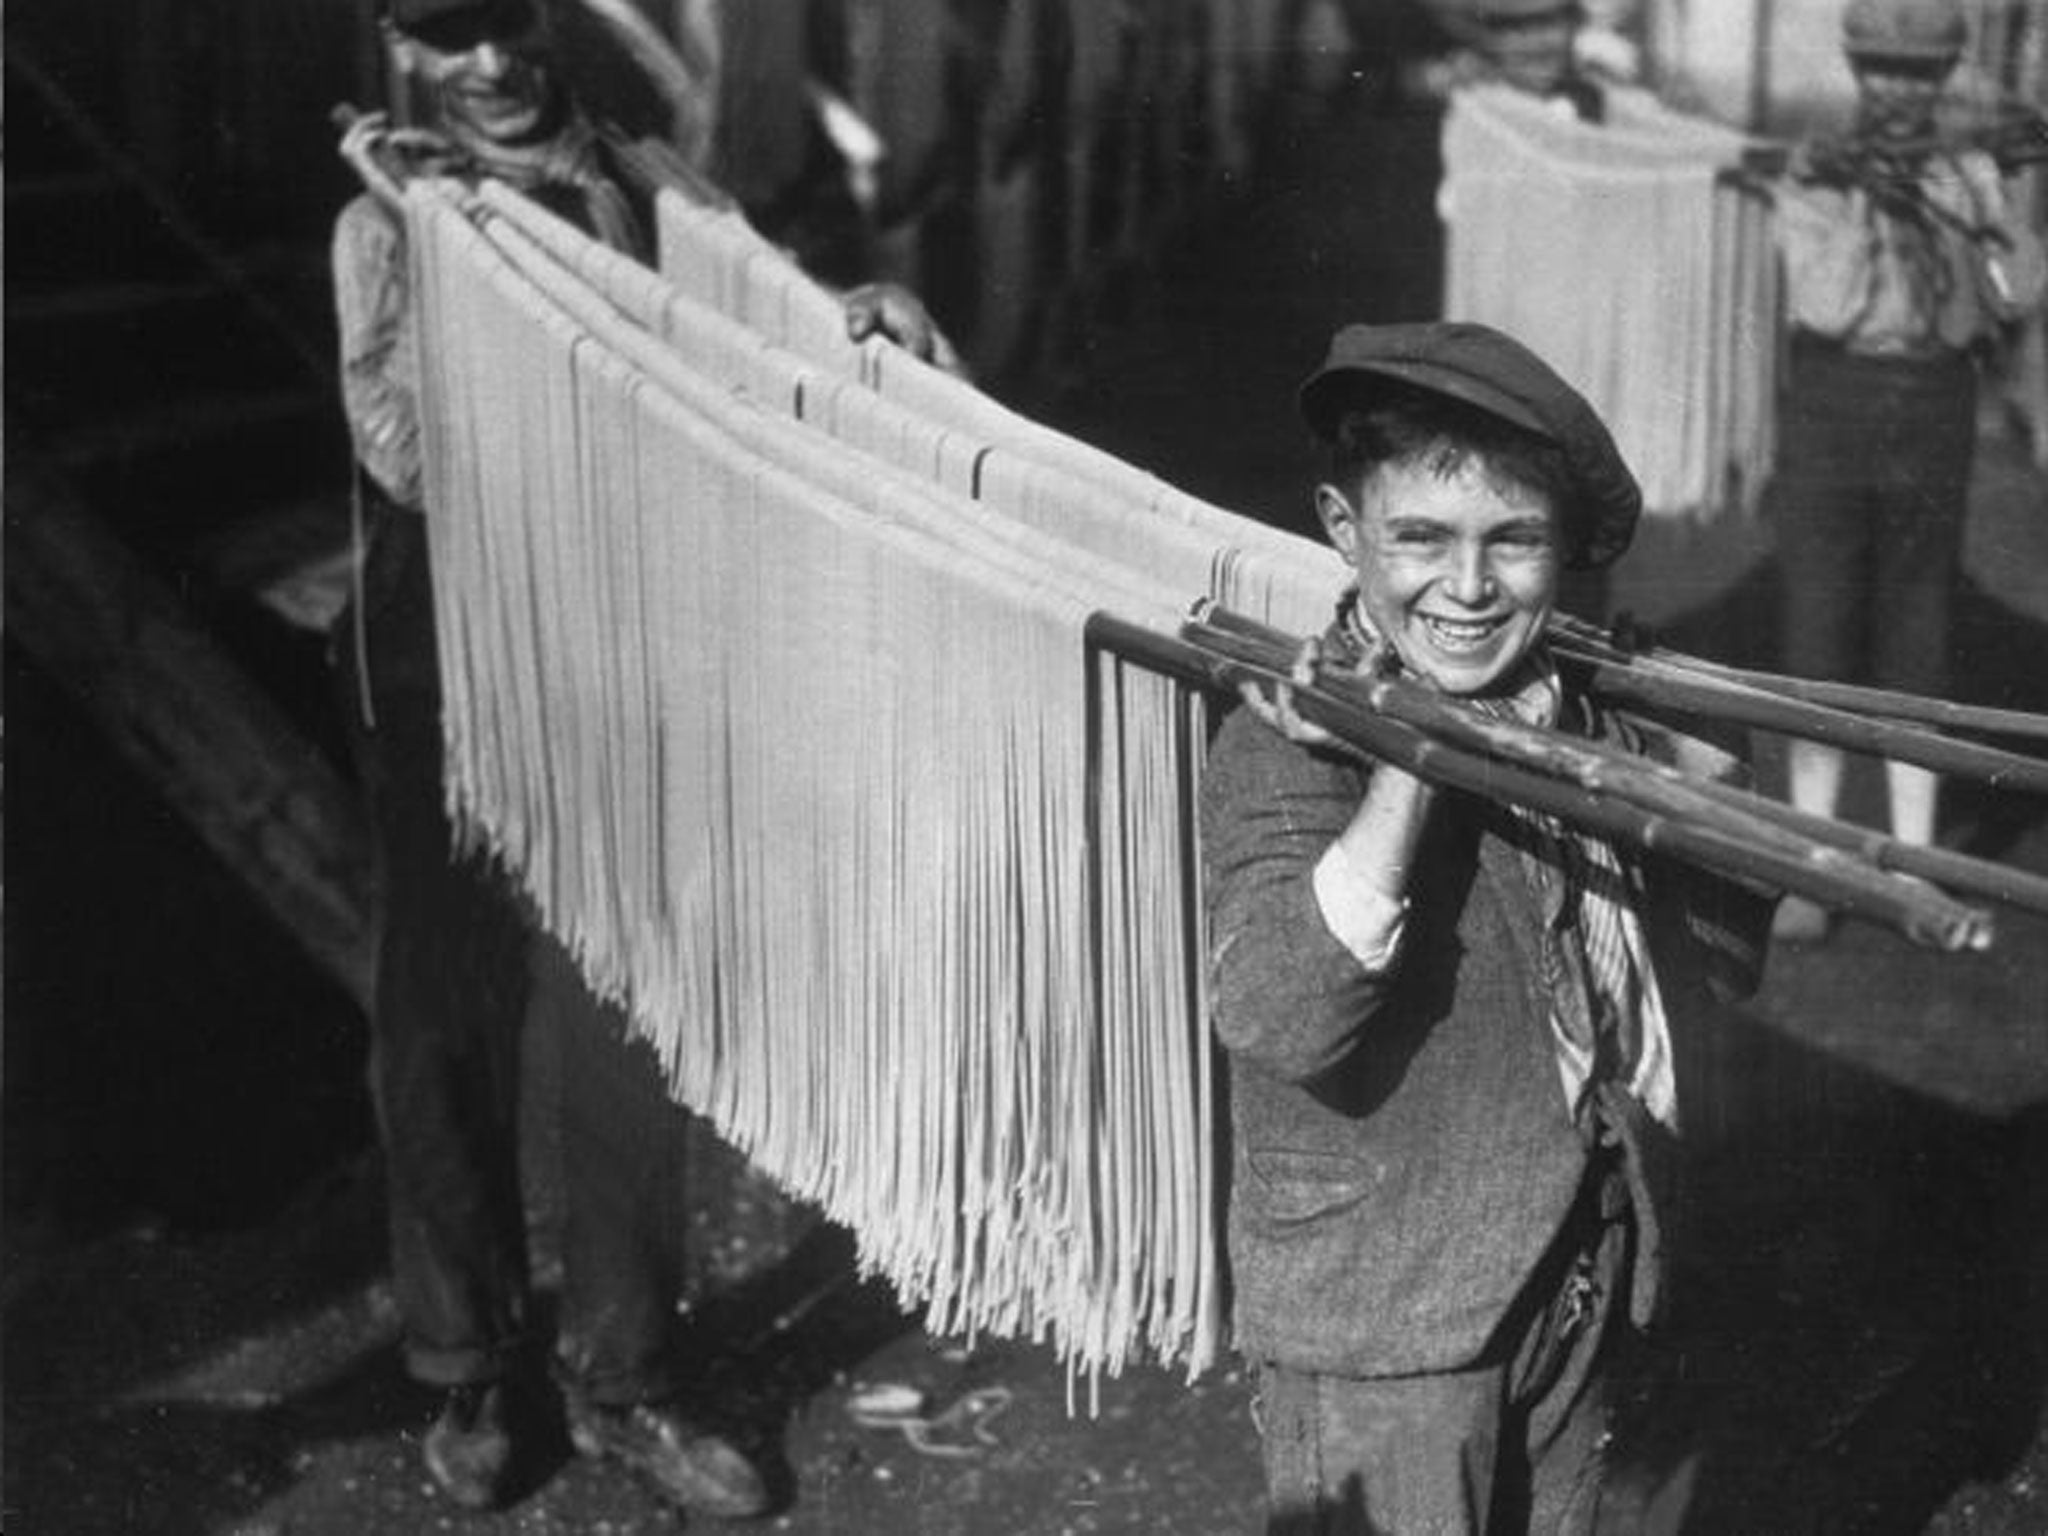 Buona! Boys carry spaghetti in 1929 Naples. Inset, Gennaro Contaldo